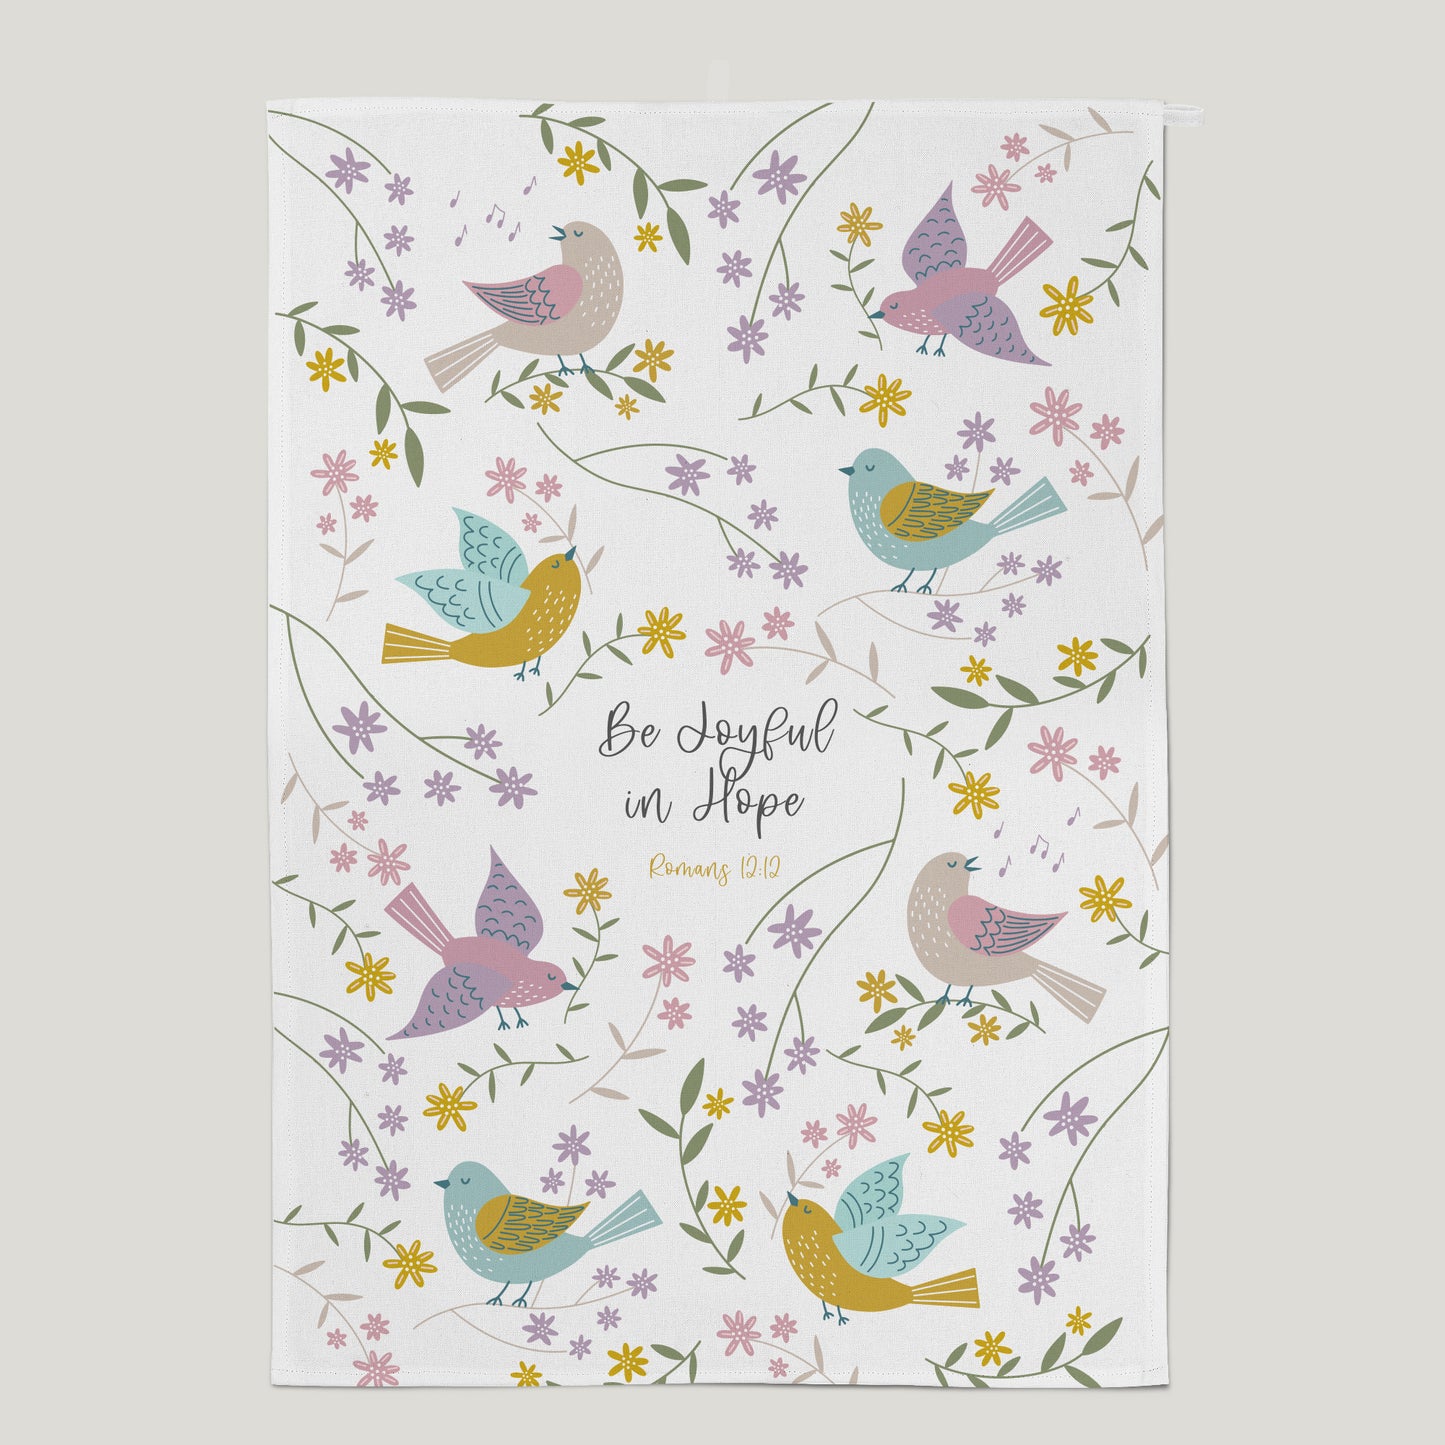 'Be Joyful in Hope' (Birds of Joy) - Tea Towel